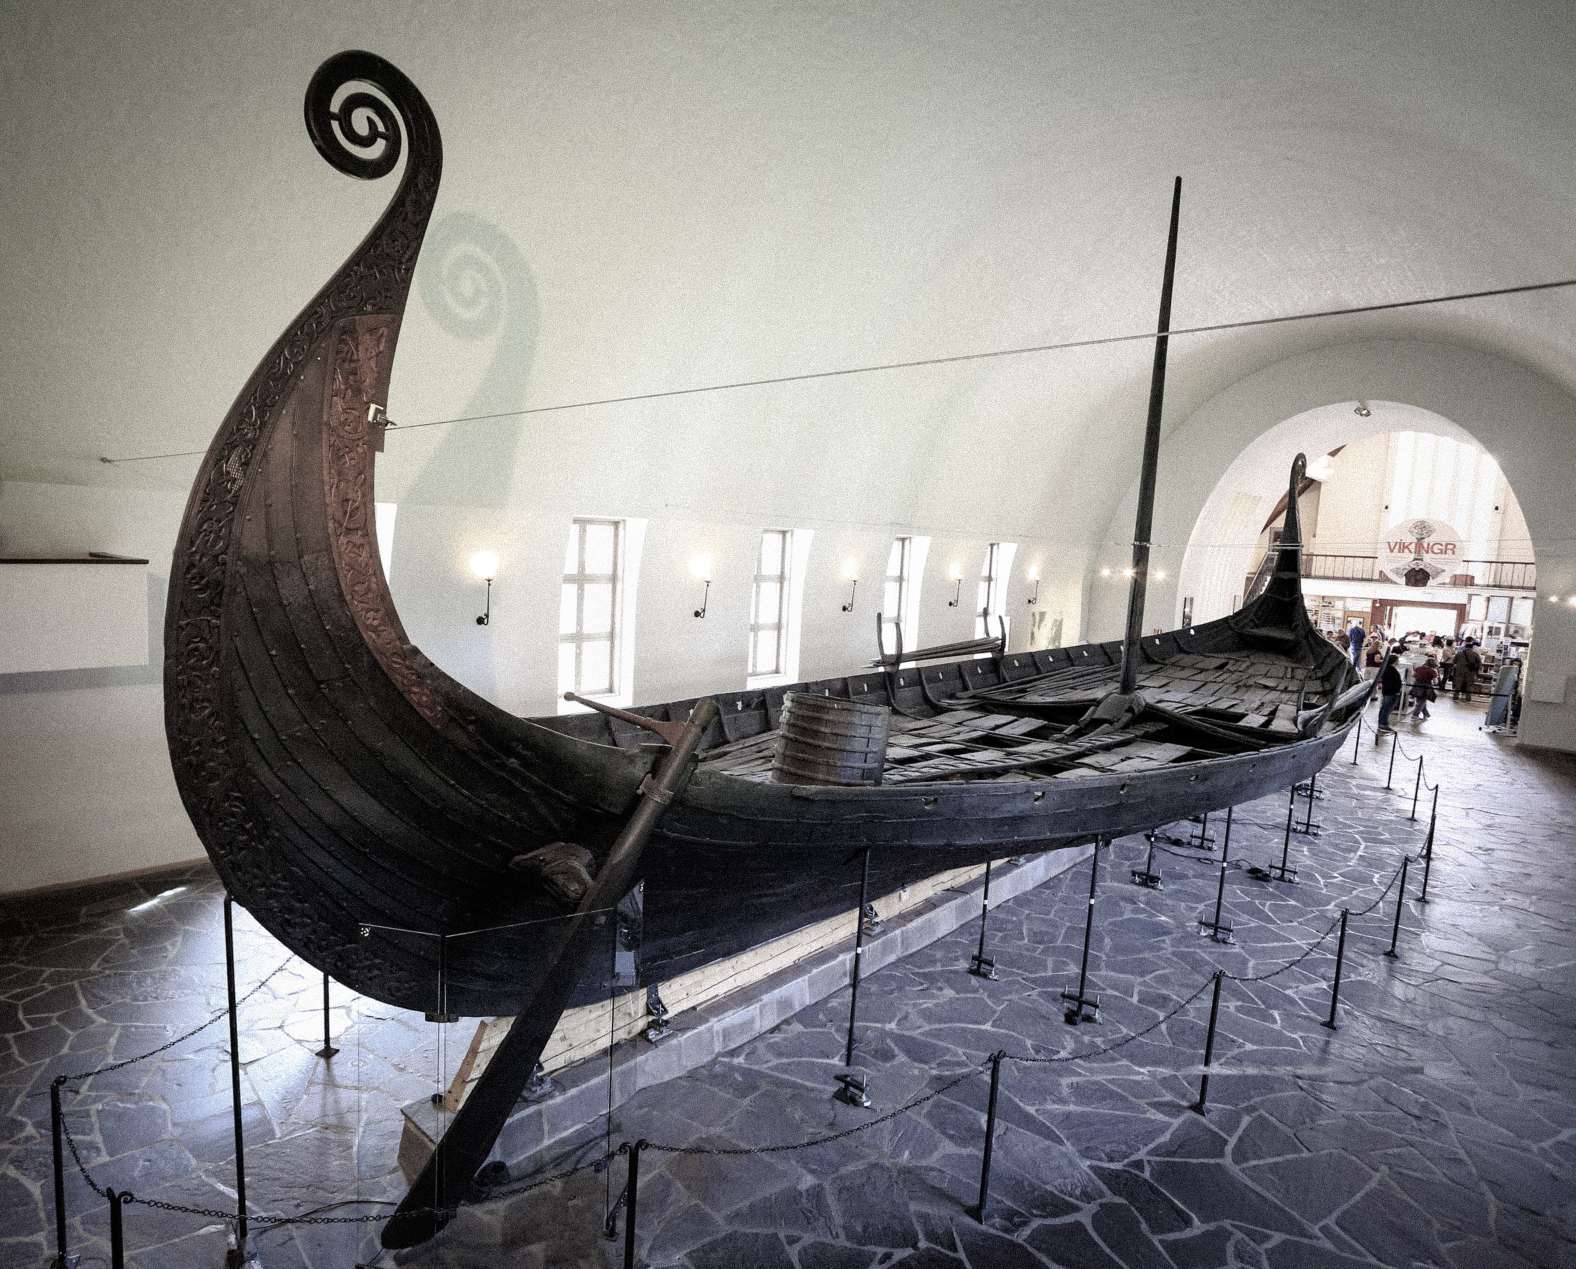 Con tàu của người Viking trong Bảo tàng Tàu Viking tại thành phố Oslo ở Na Uy. © Tín dụng hình ảnh: Vlad Ghiea | Được cấp phép từ DreamsTime.com (Sử dụng cho Biên tập viên Kho ảnh, ID: 155282591)